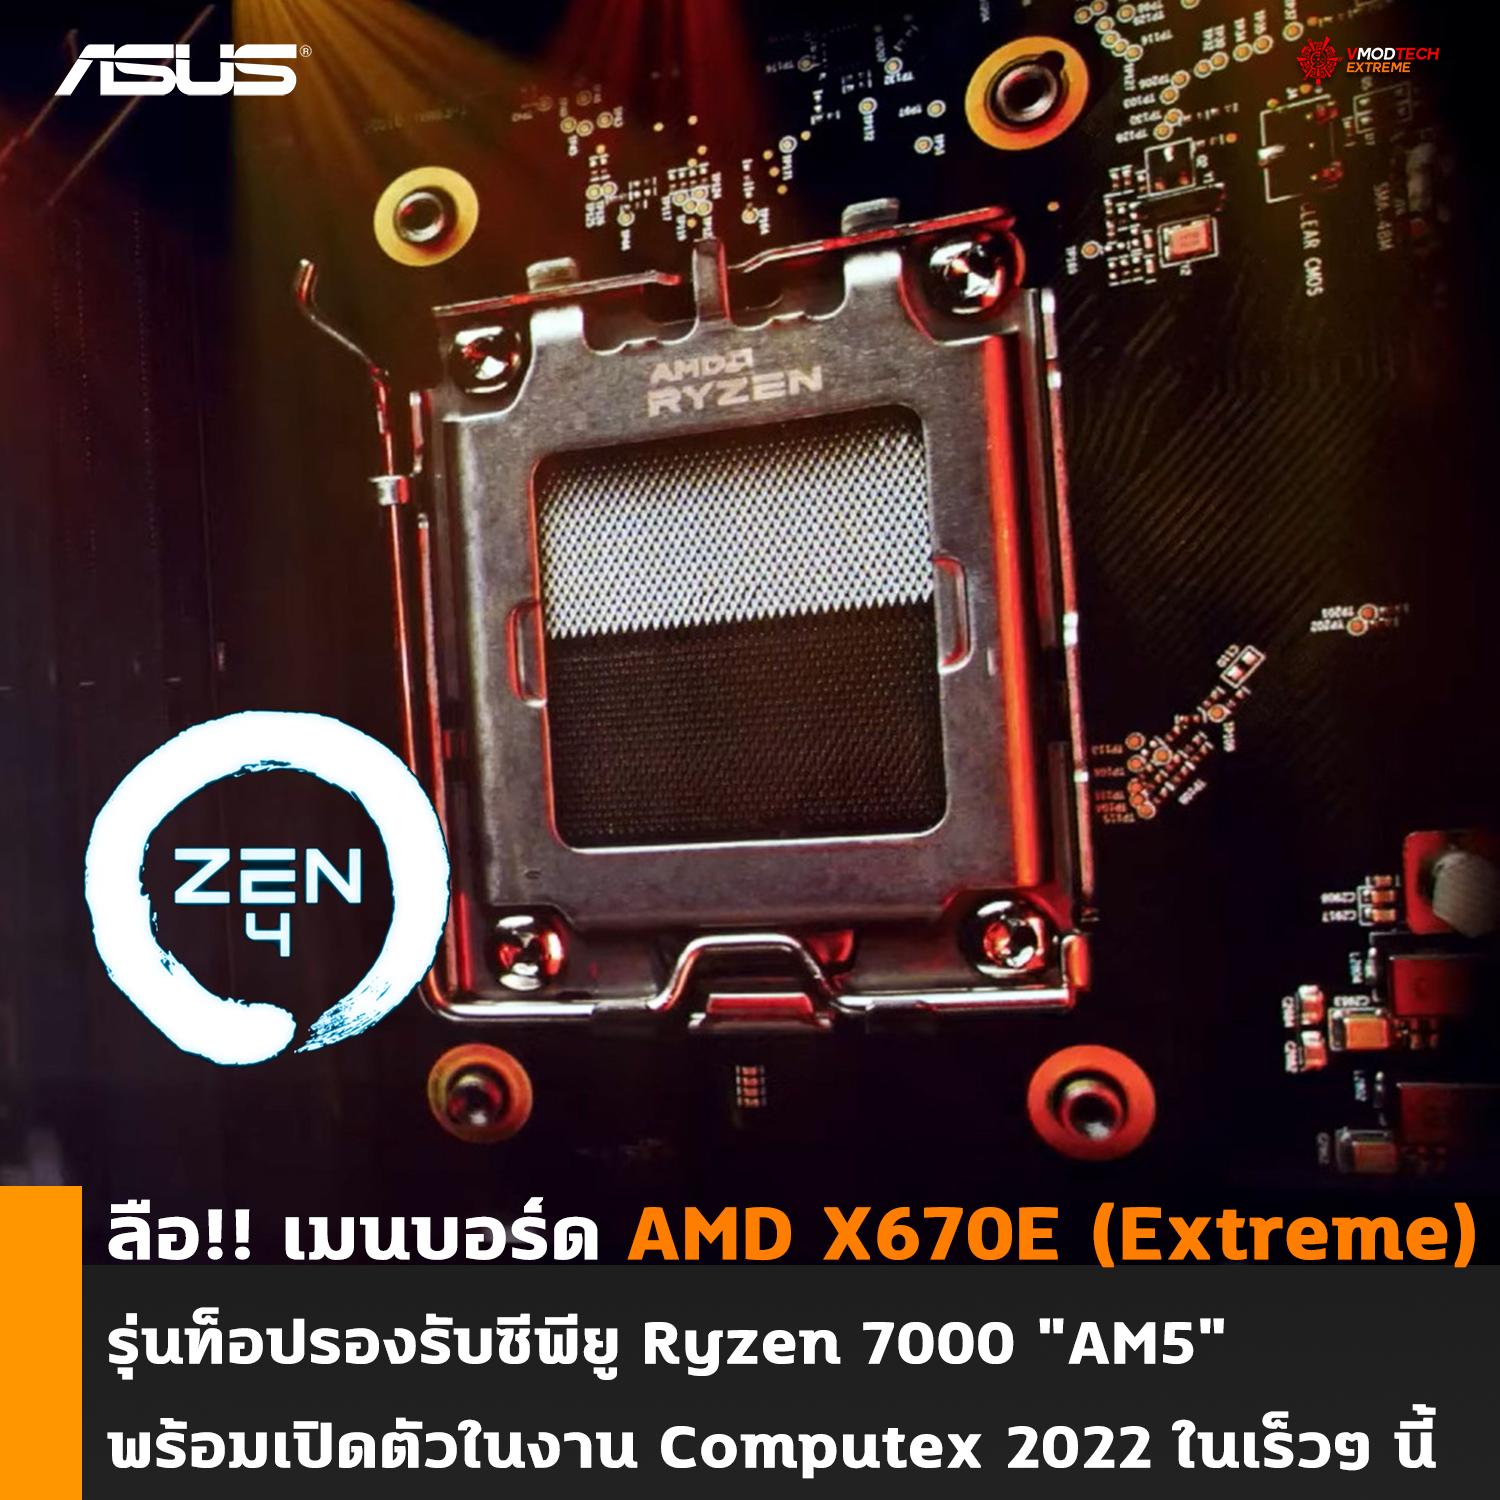 ลือ!! เมนบอร์ด AMD X670E (Extreme) รุ่นท็อปรองรับซีพียู Ryzen 7000 